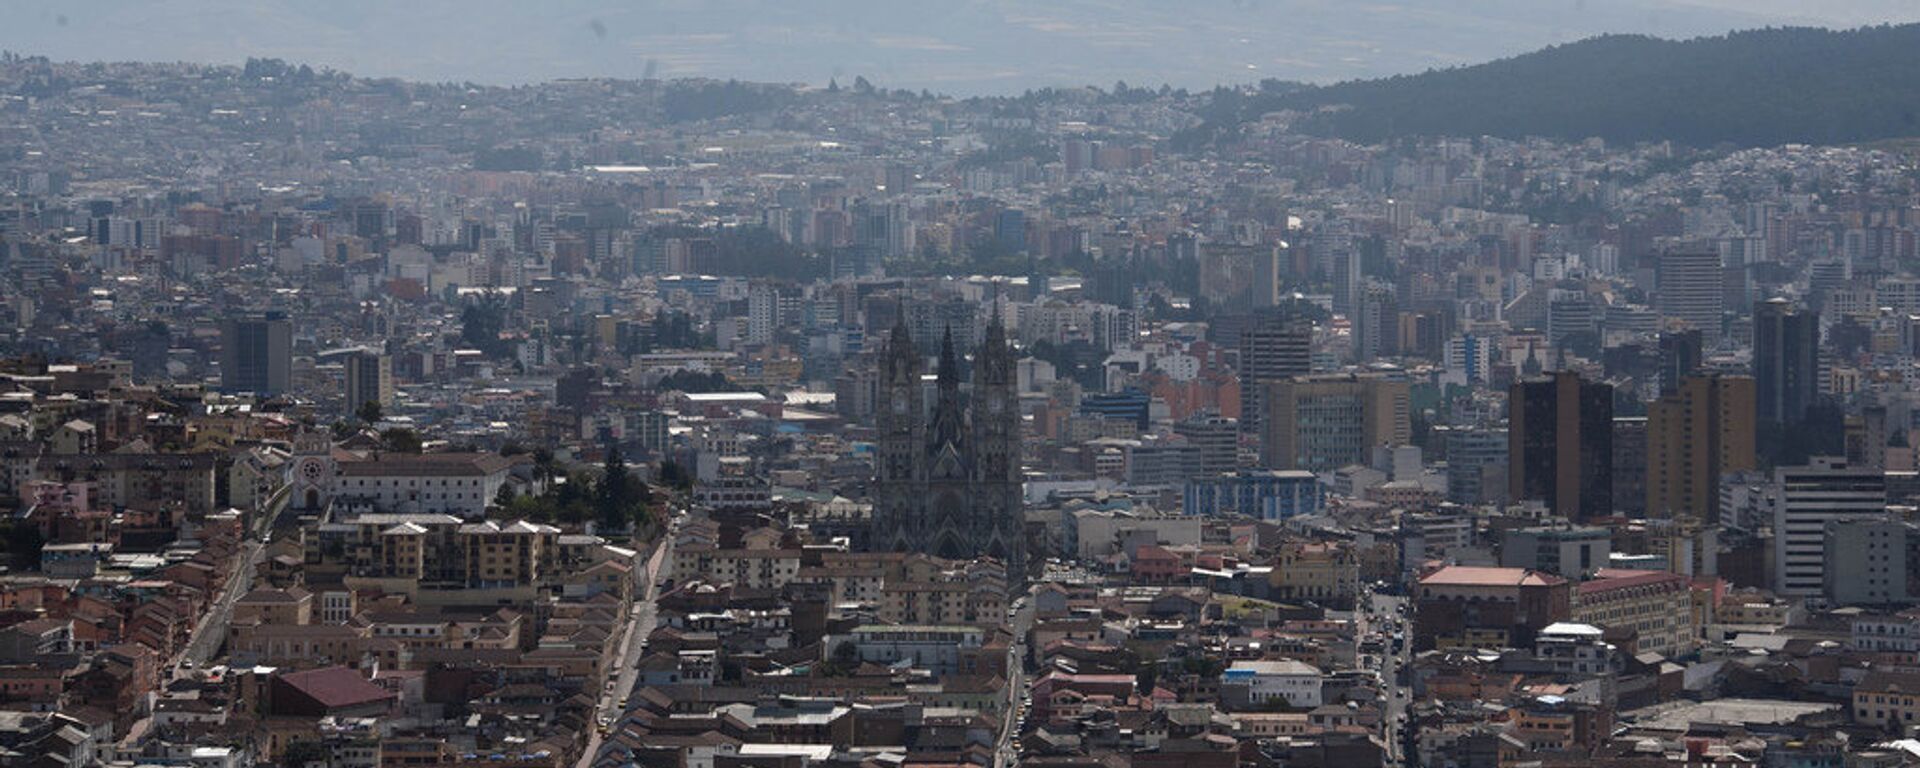 Quito, capital de Ecuador - Sputnik Mundo, 1920, 13.10.2020